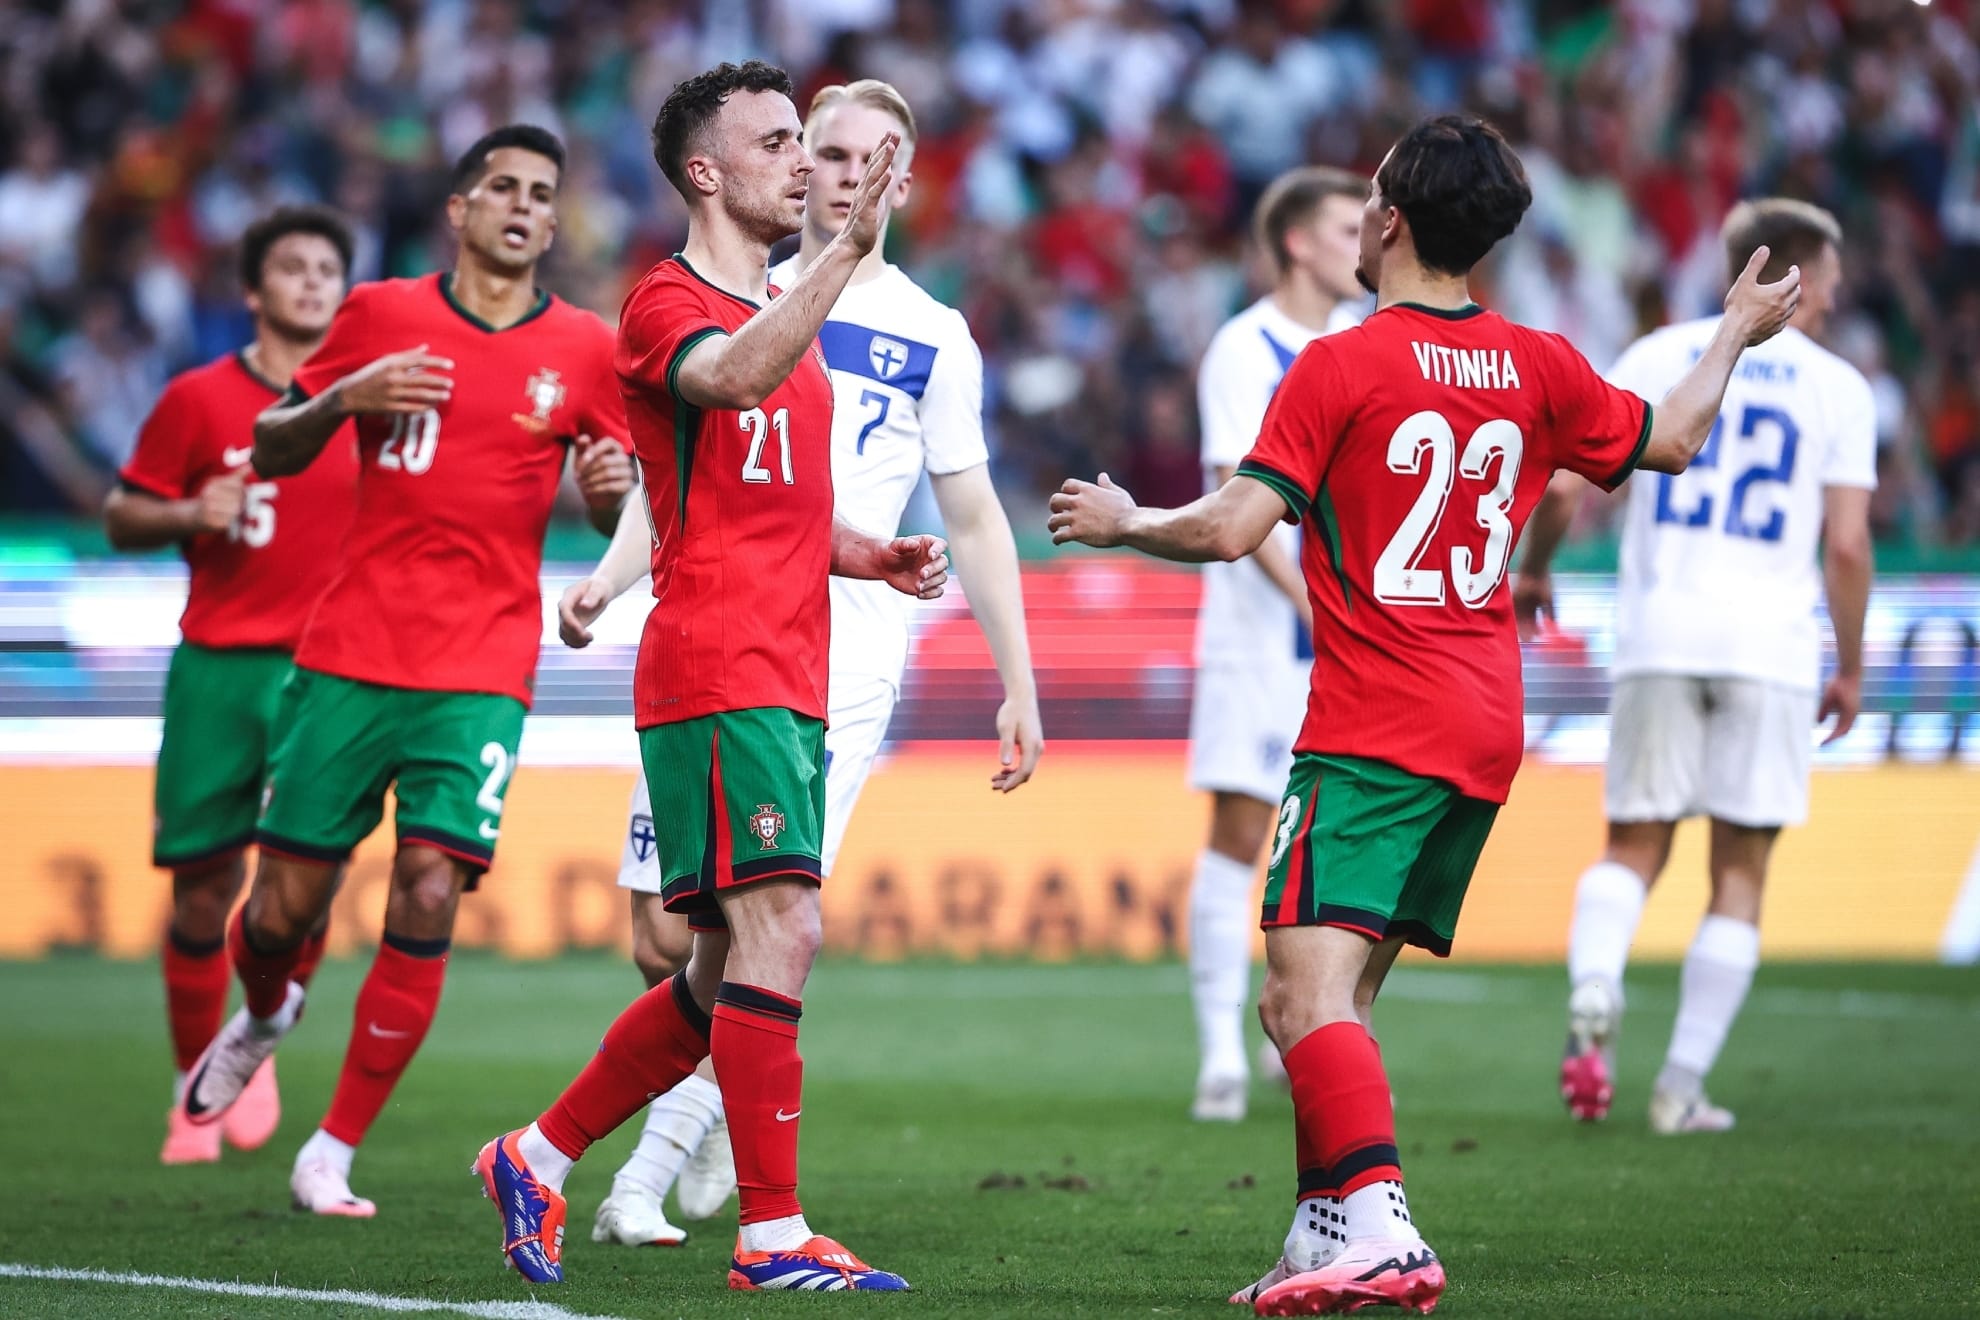 Jugadores de Portugal festejan gol ante Finlandia en amistoso.